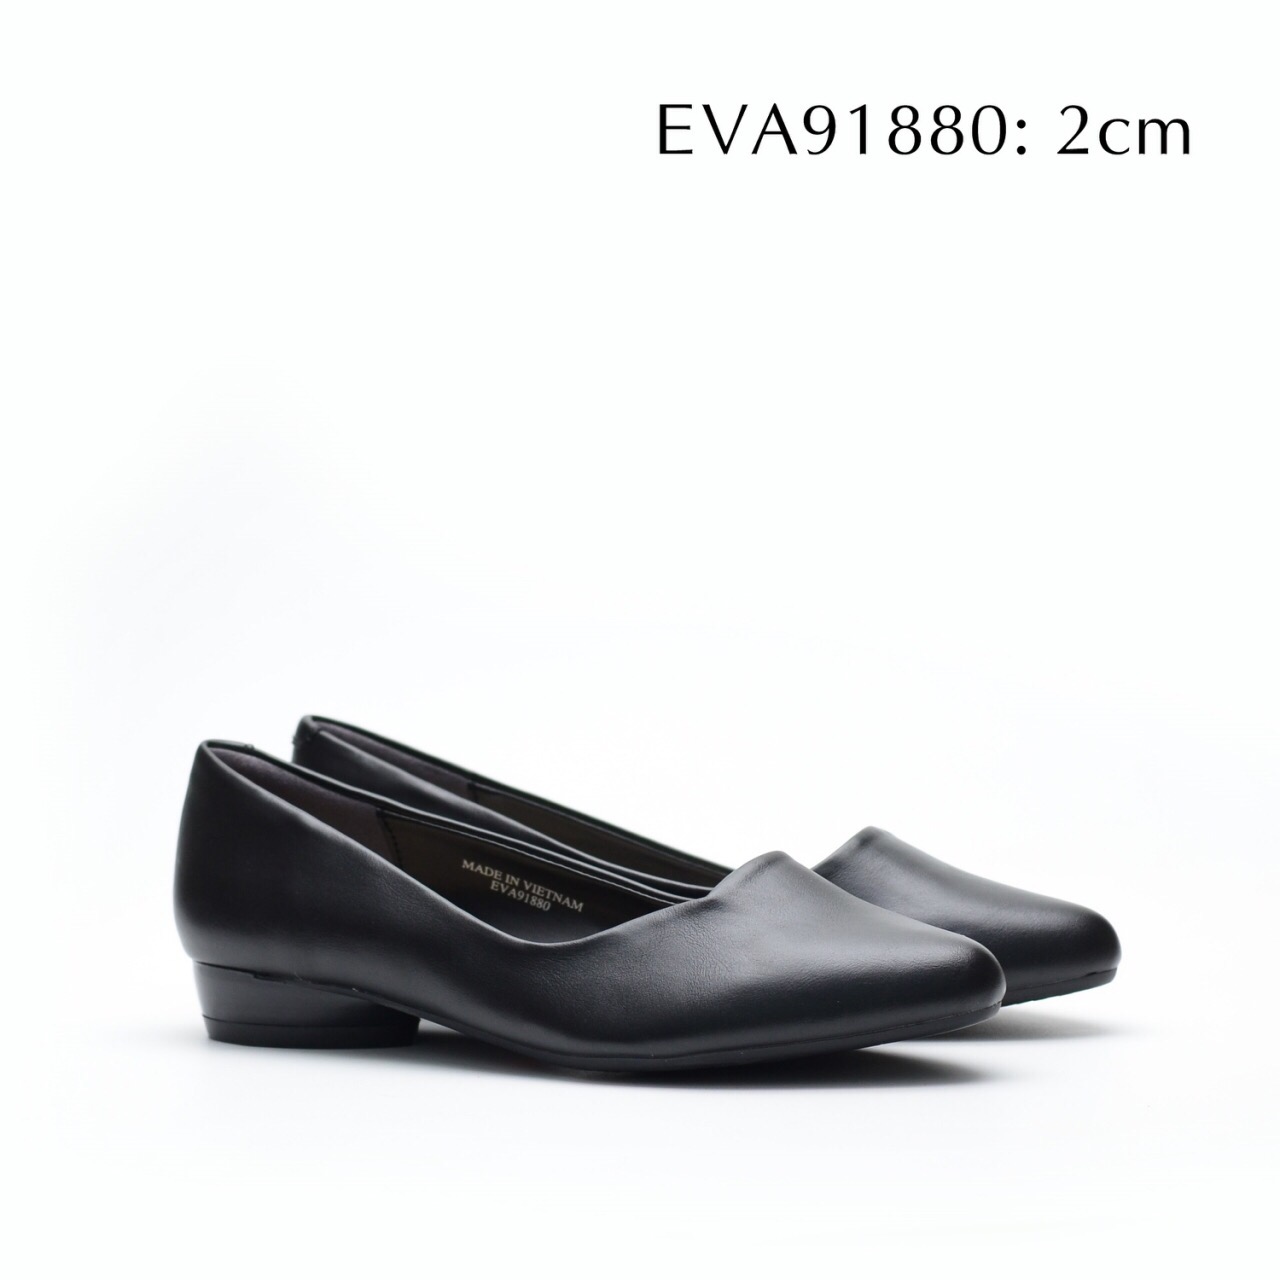 Giày công sở EVA91880 thiết kế trẻ trung, thanh nhã